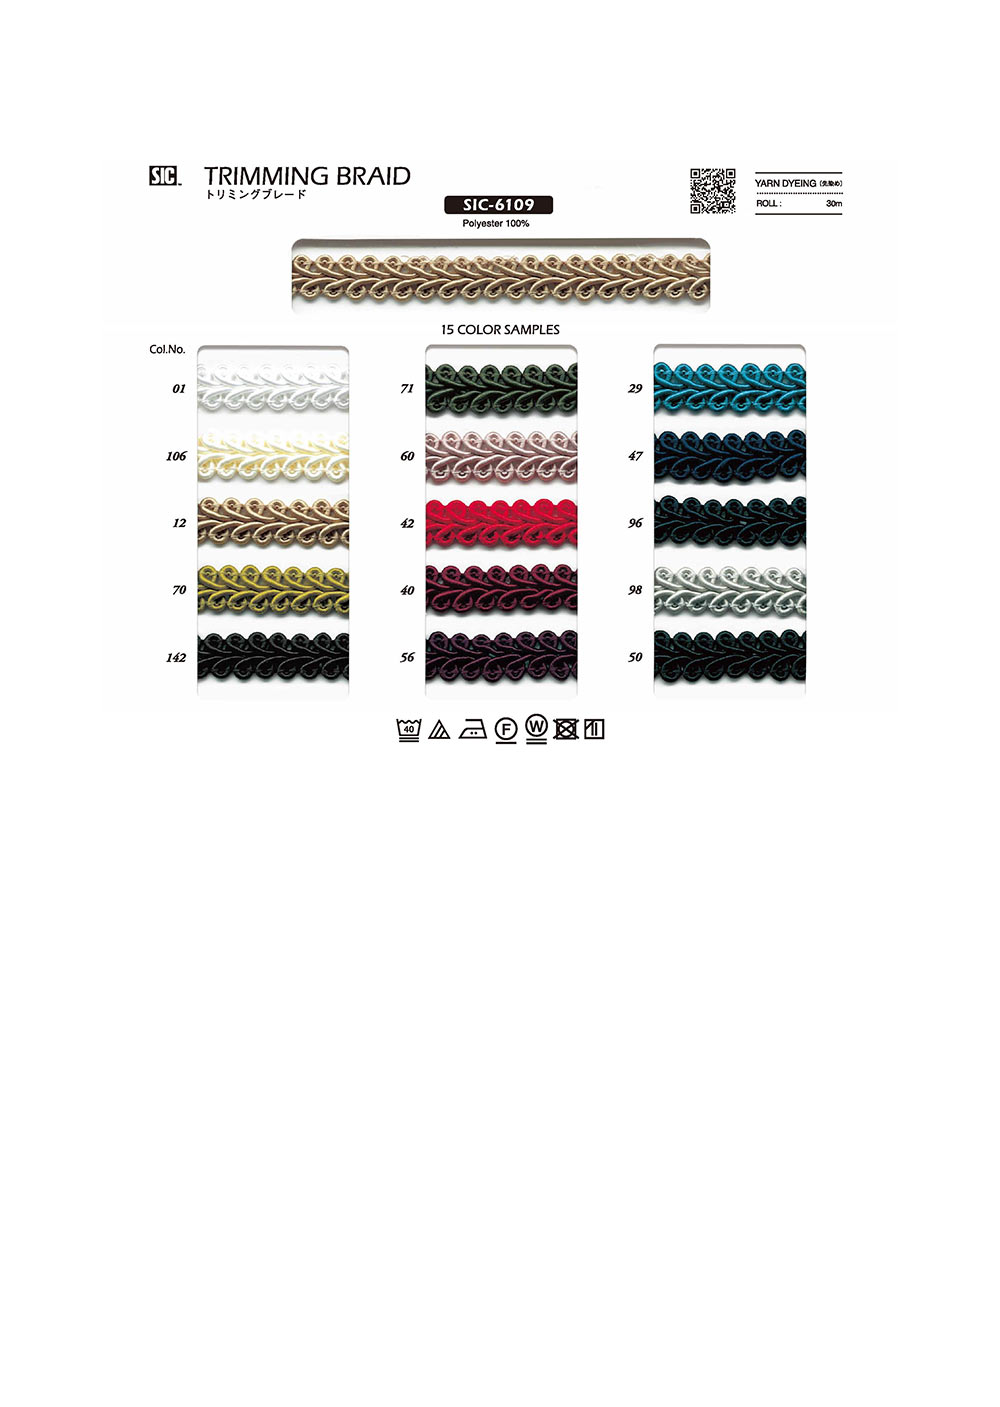 SIC-6109 Trimming Braid[Ribbon Tape Cord] SHINDO(SIC)